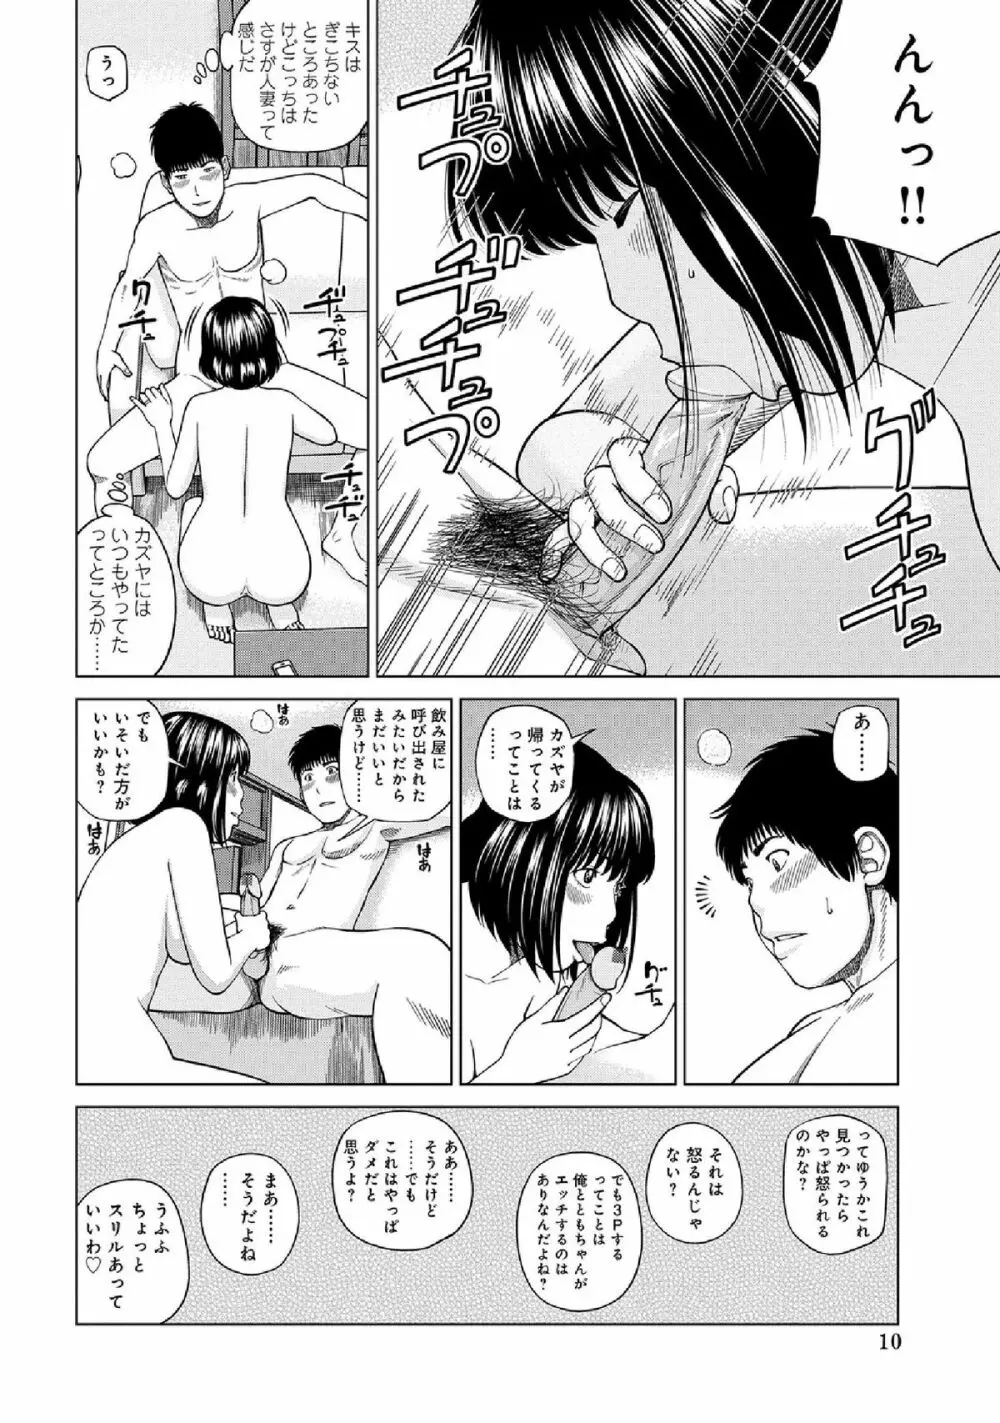 WEB版コミック激ヤバ! vol.52 12ページ